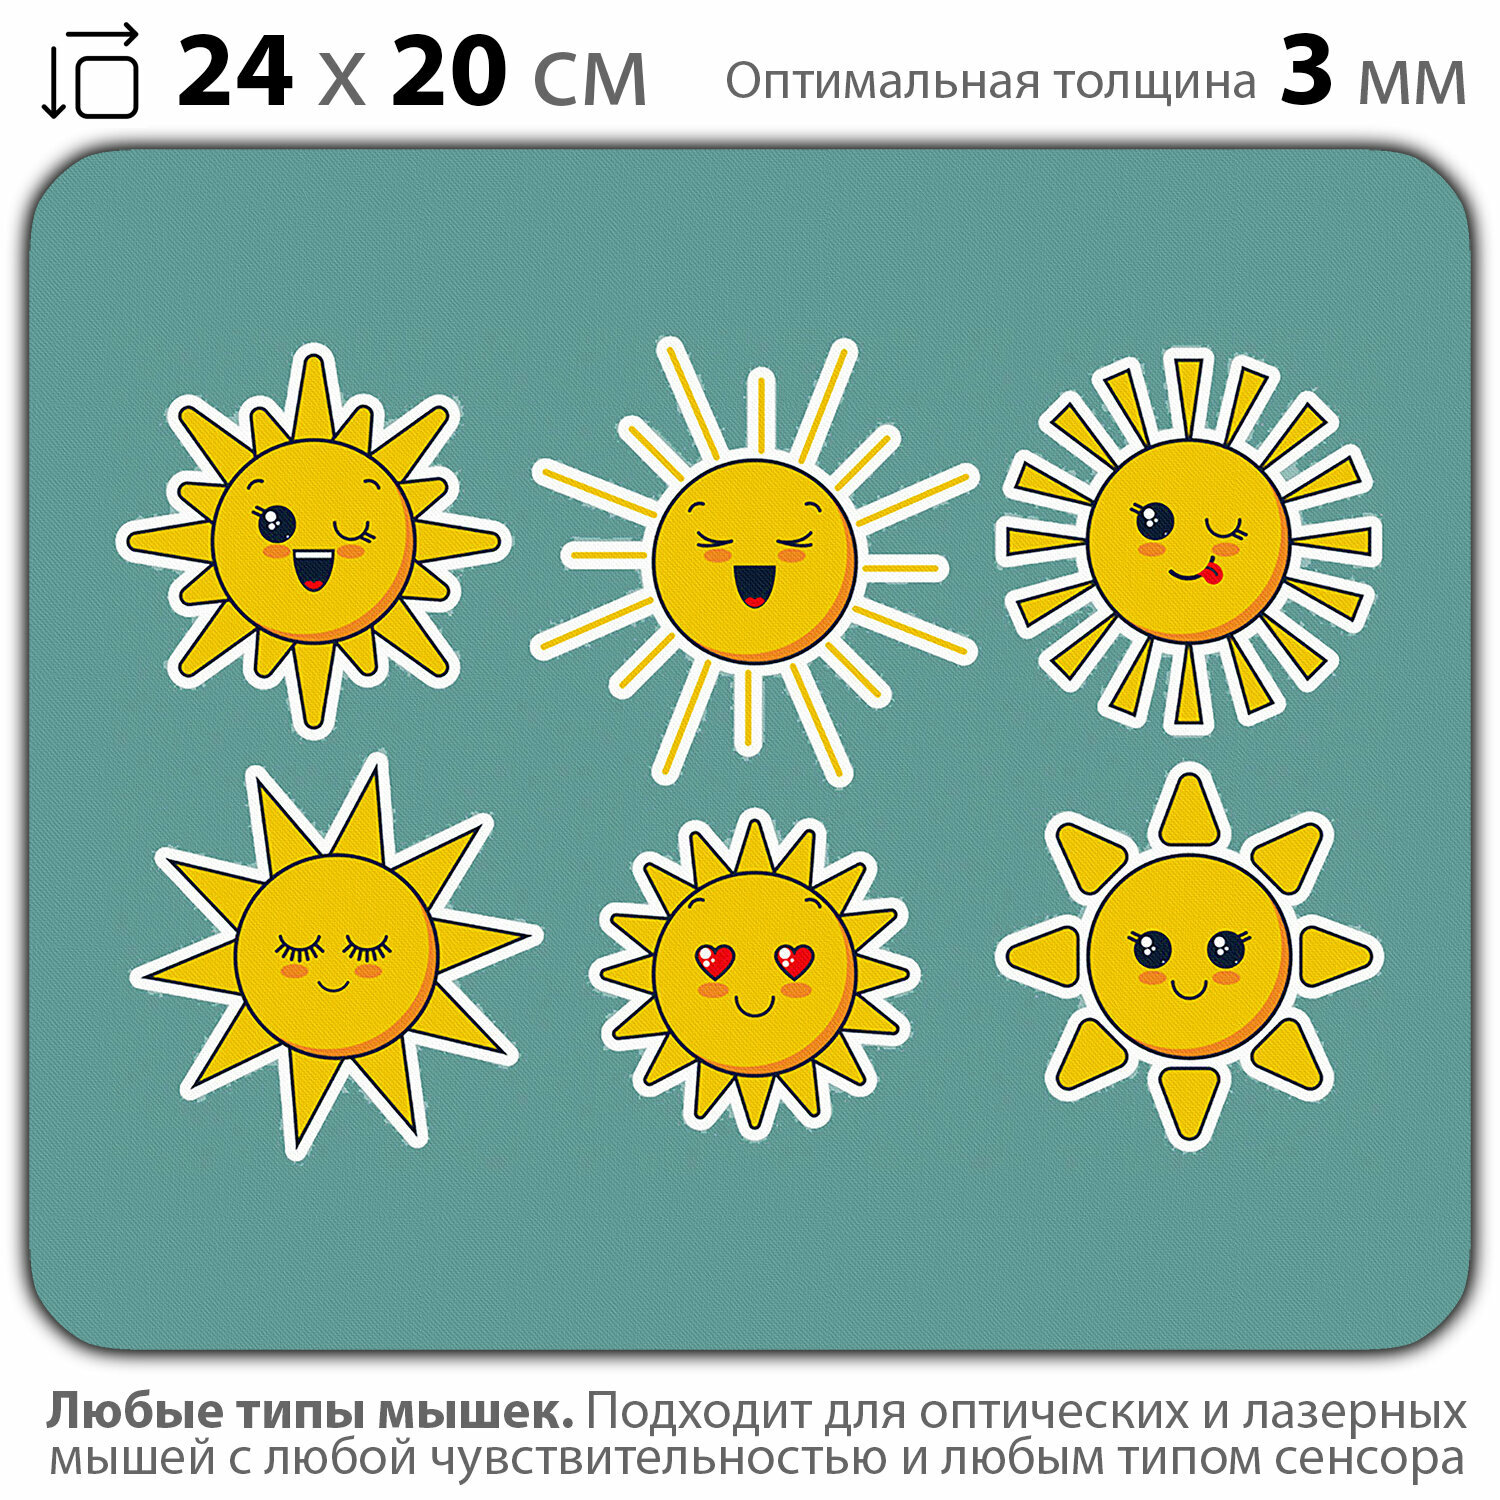 Коврик для мыши "Солнечные эмодзи" (24 x 20 см x 3 мм)